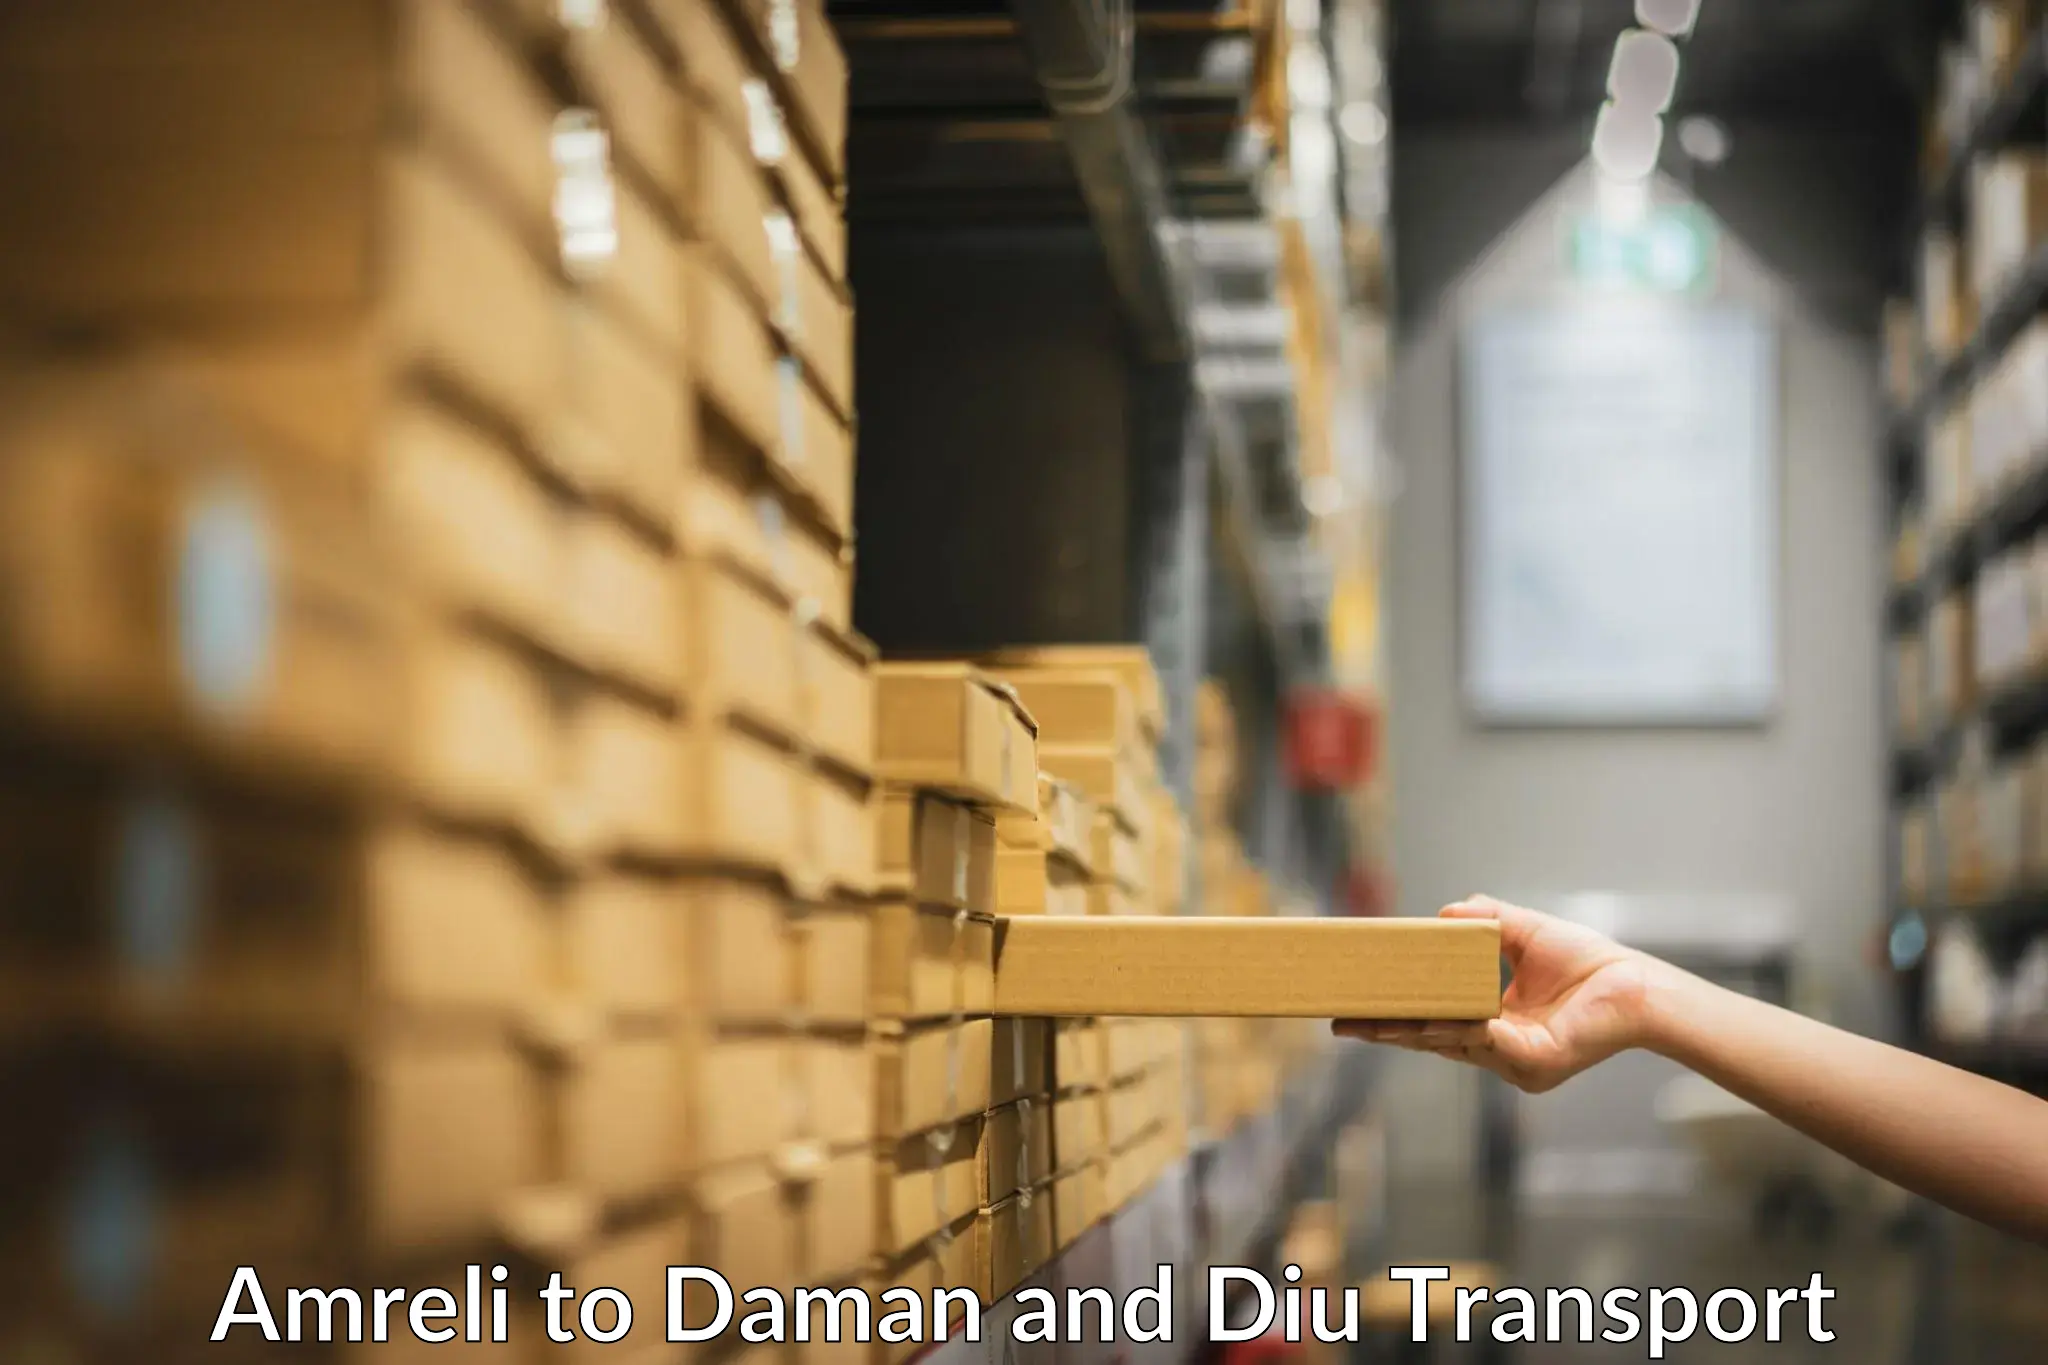 Furniture transport service Amreli to Daman and Diu